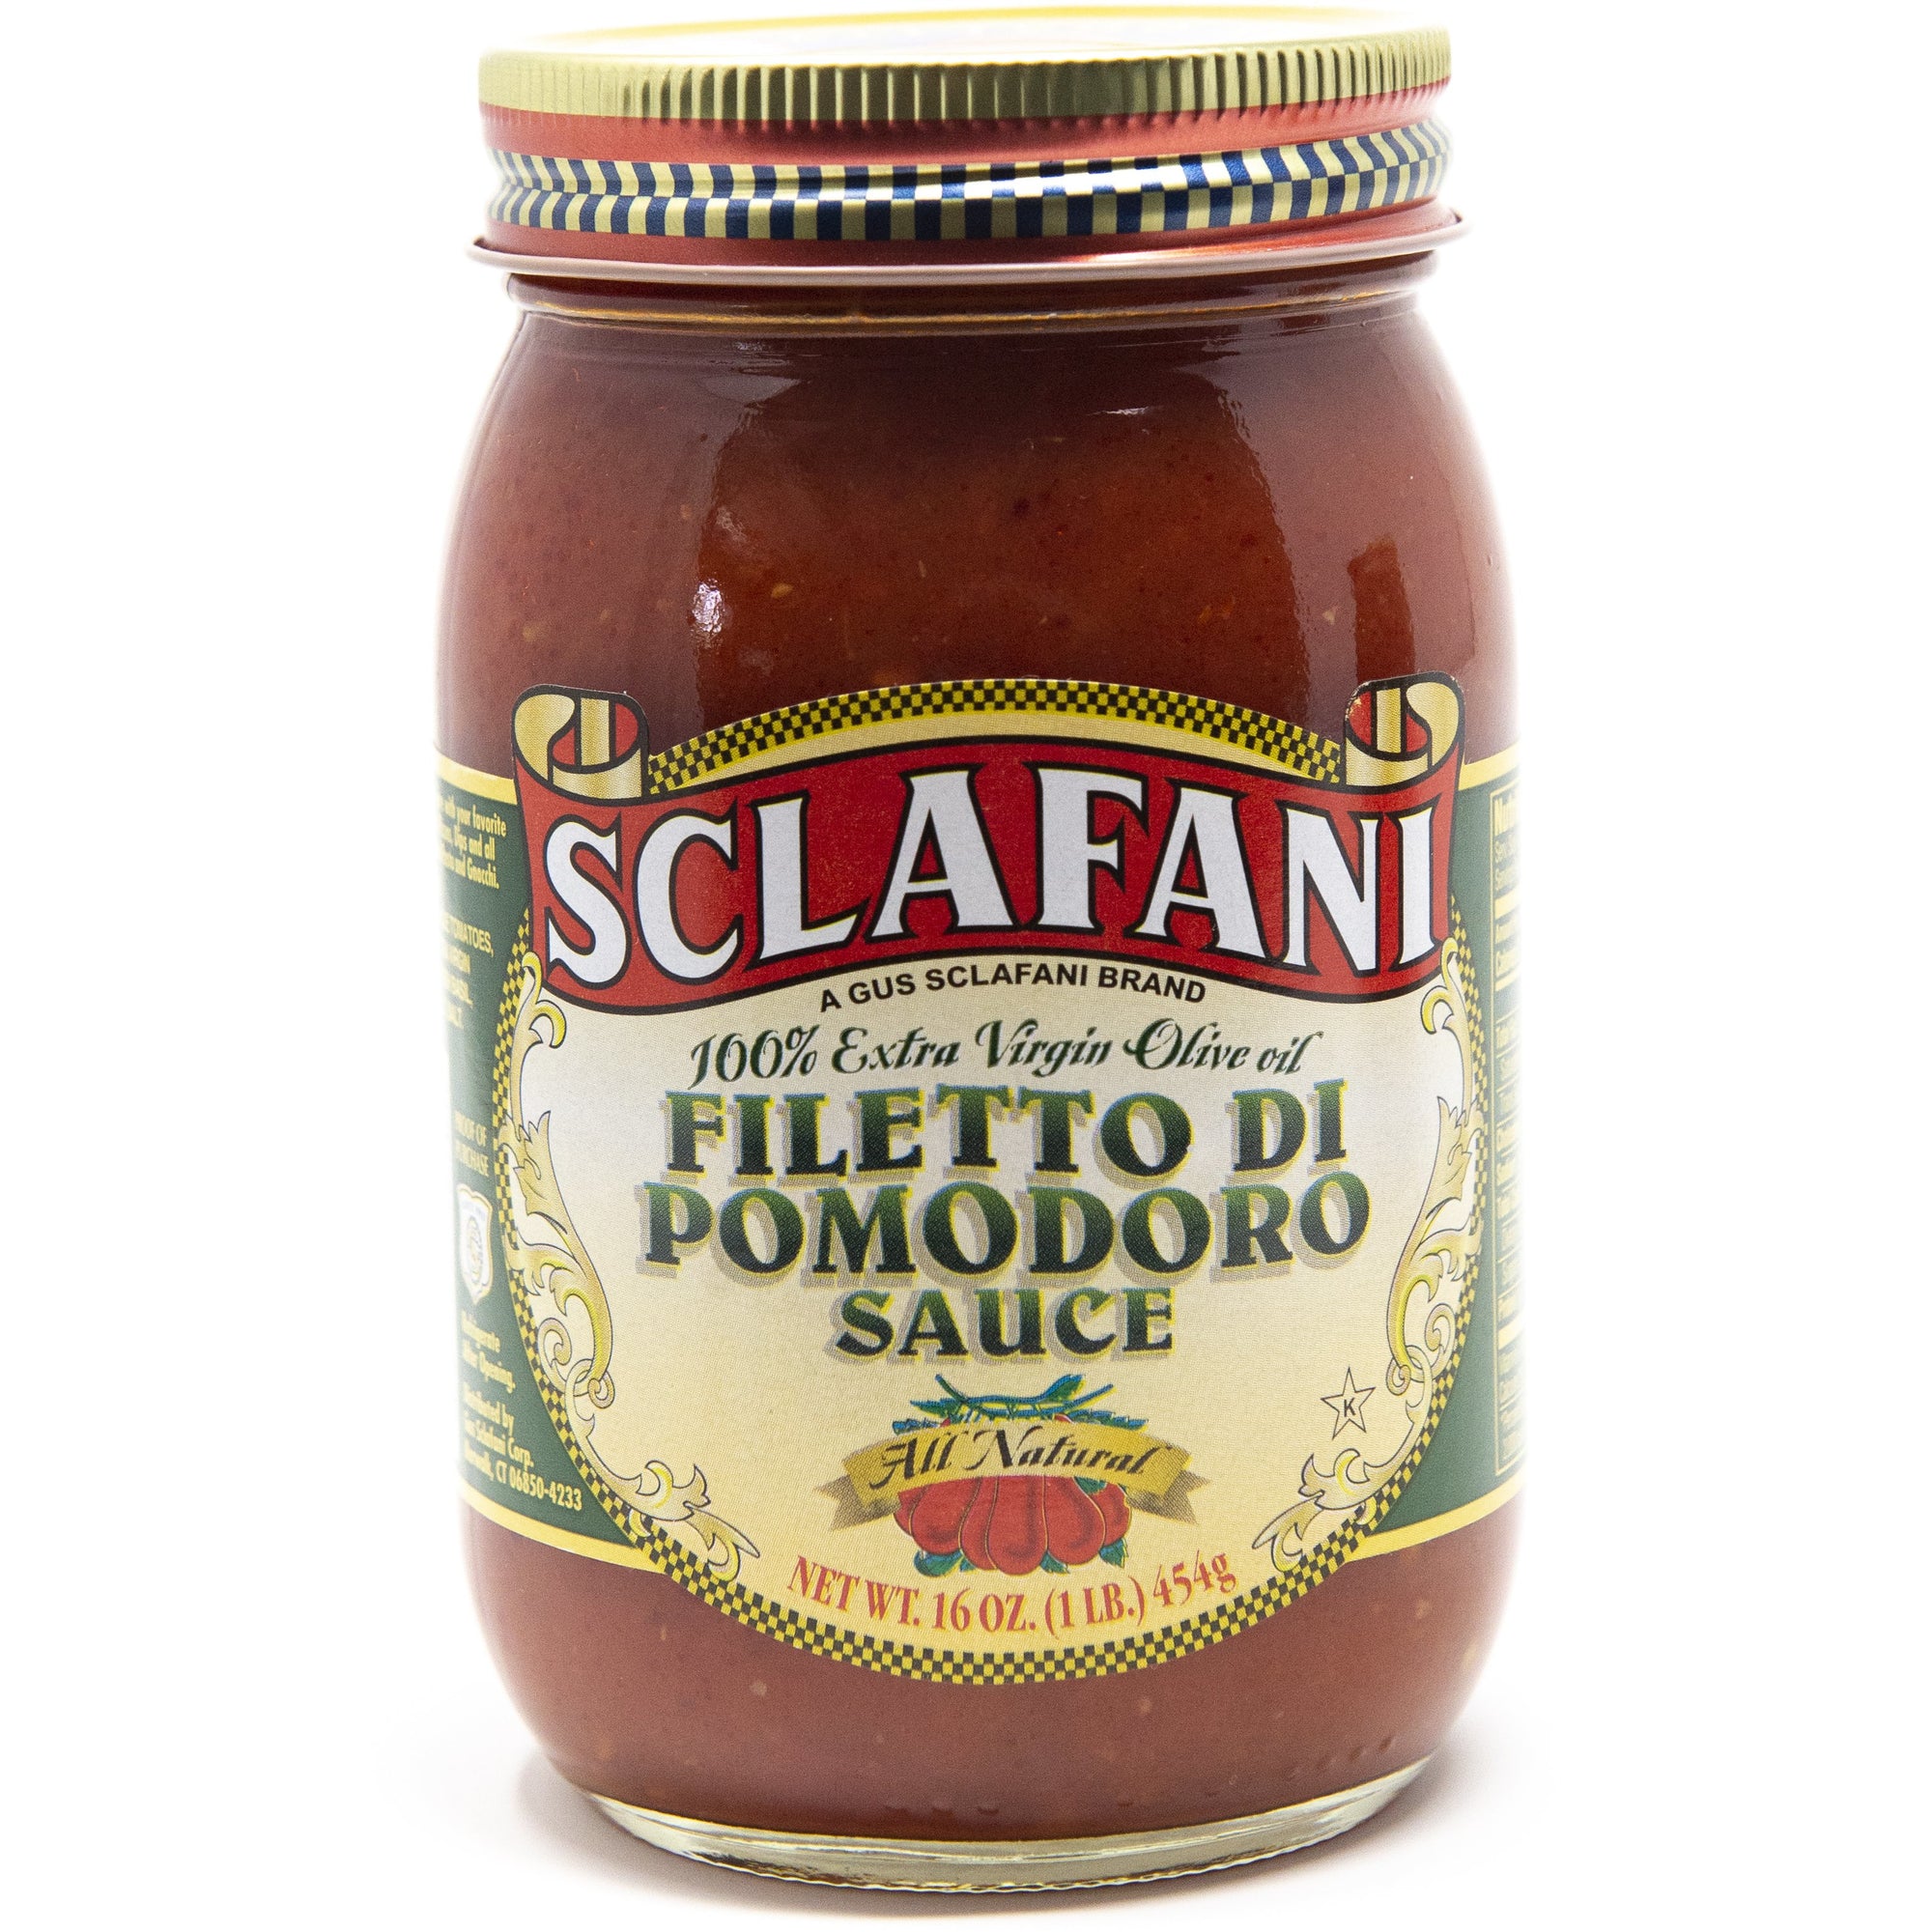 Sclafani Filetto Di Pomodoro Sauce 16 oz.